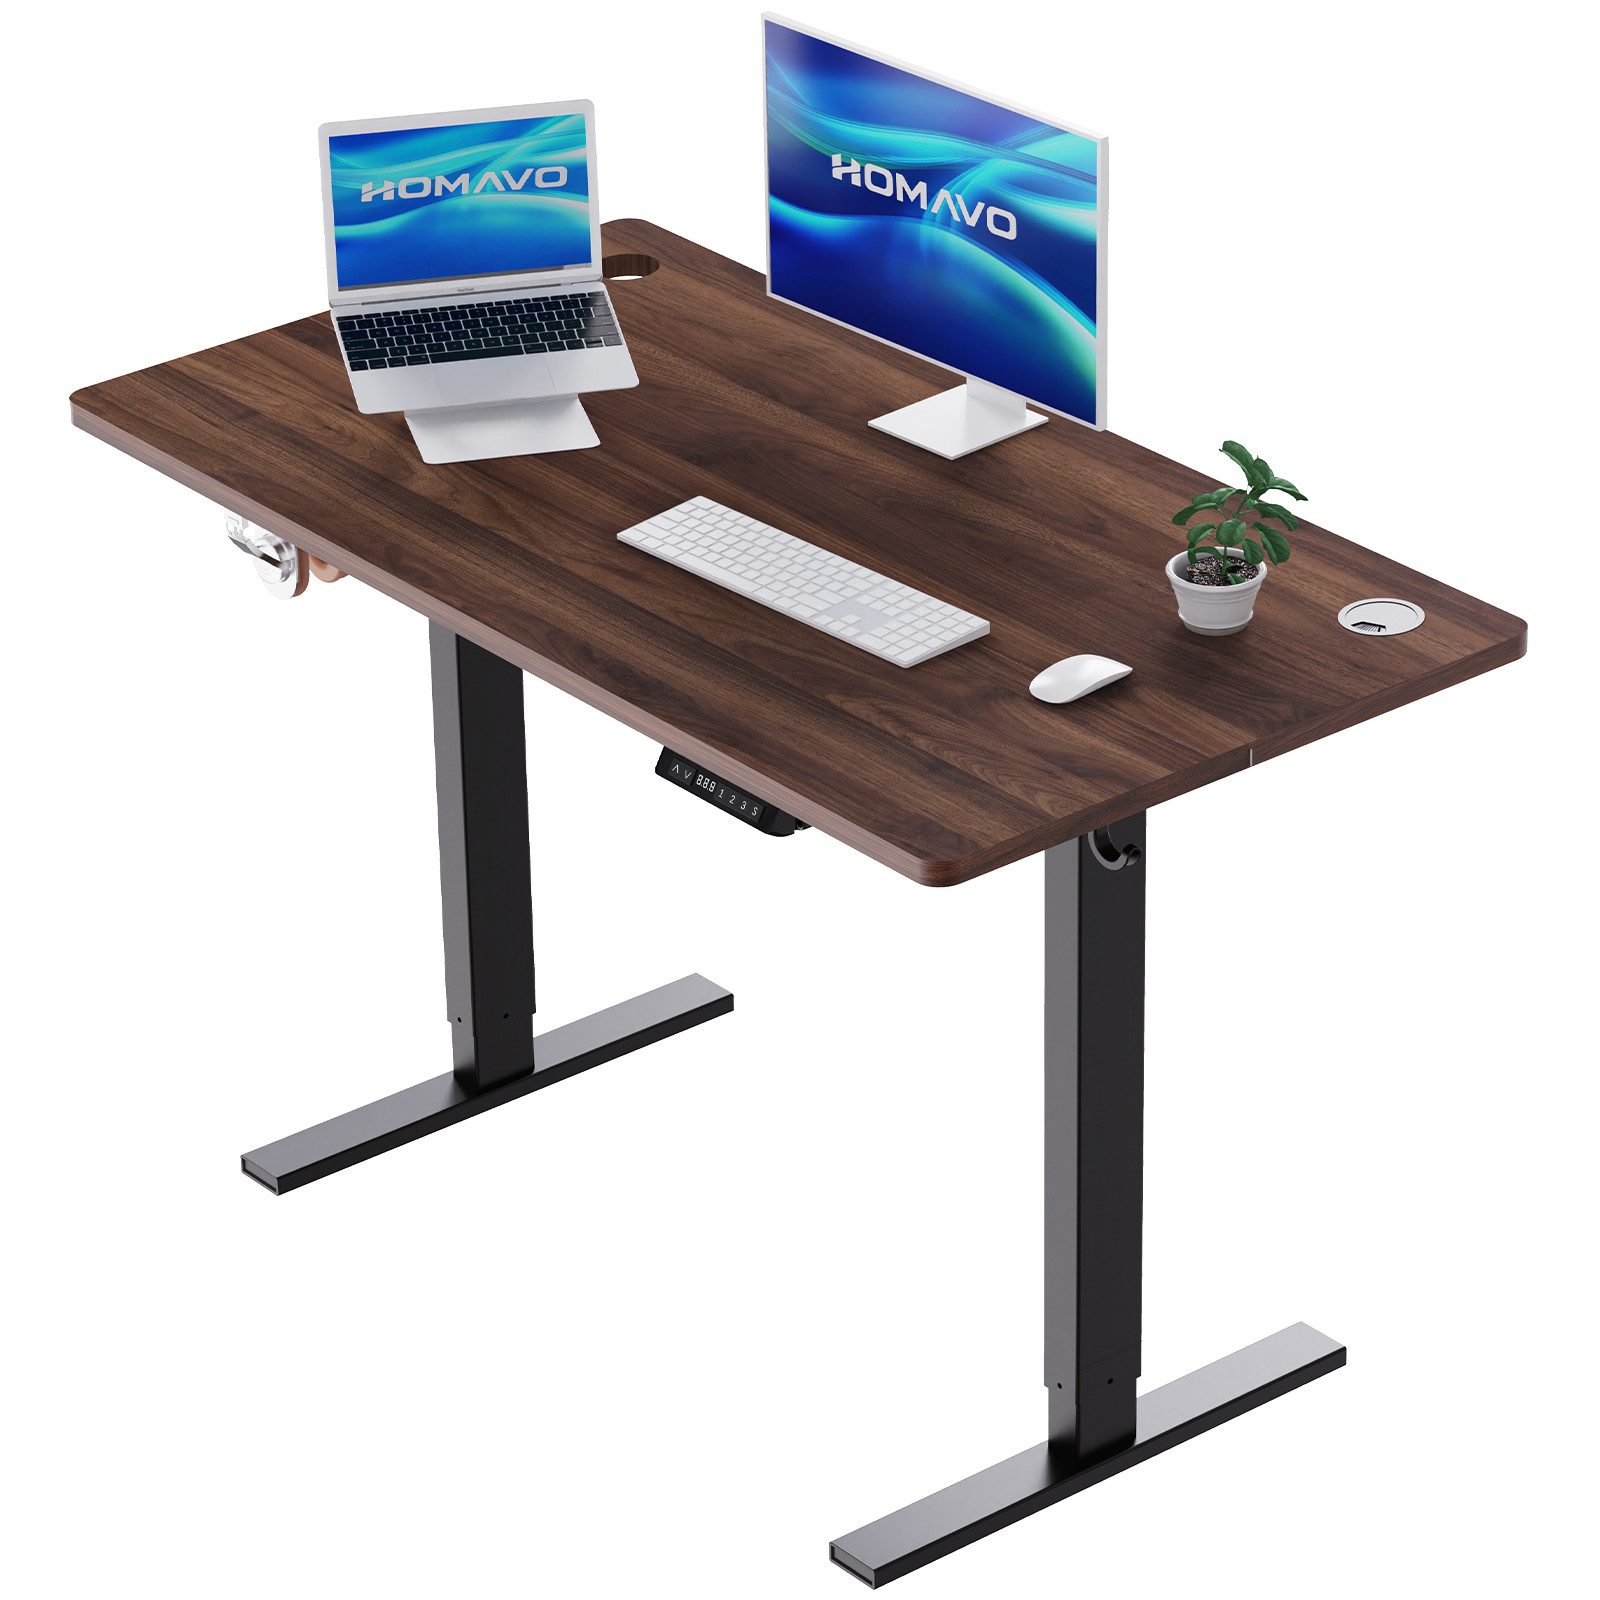 HOMAVO Schreibtisch Höhenverstellbarer schreibtisch mit Memory- und Rebound-Funktion, USB/Typ C,Длина 120 cm, Длина 140, zwei Größen